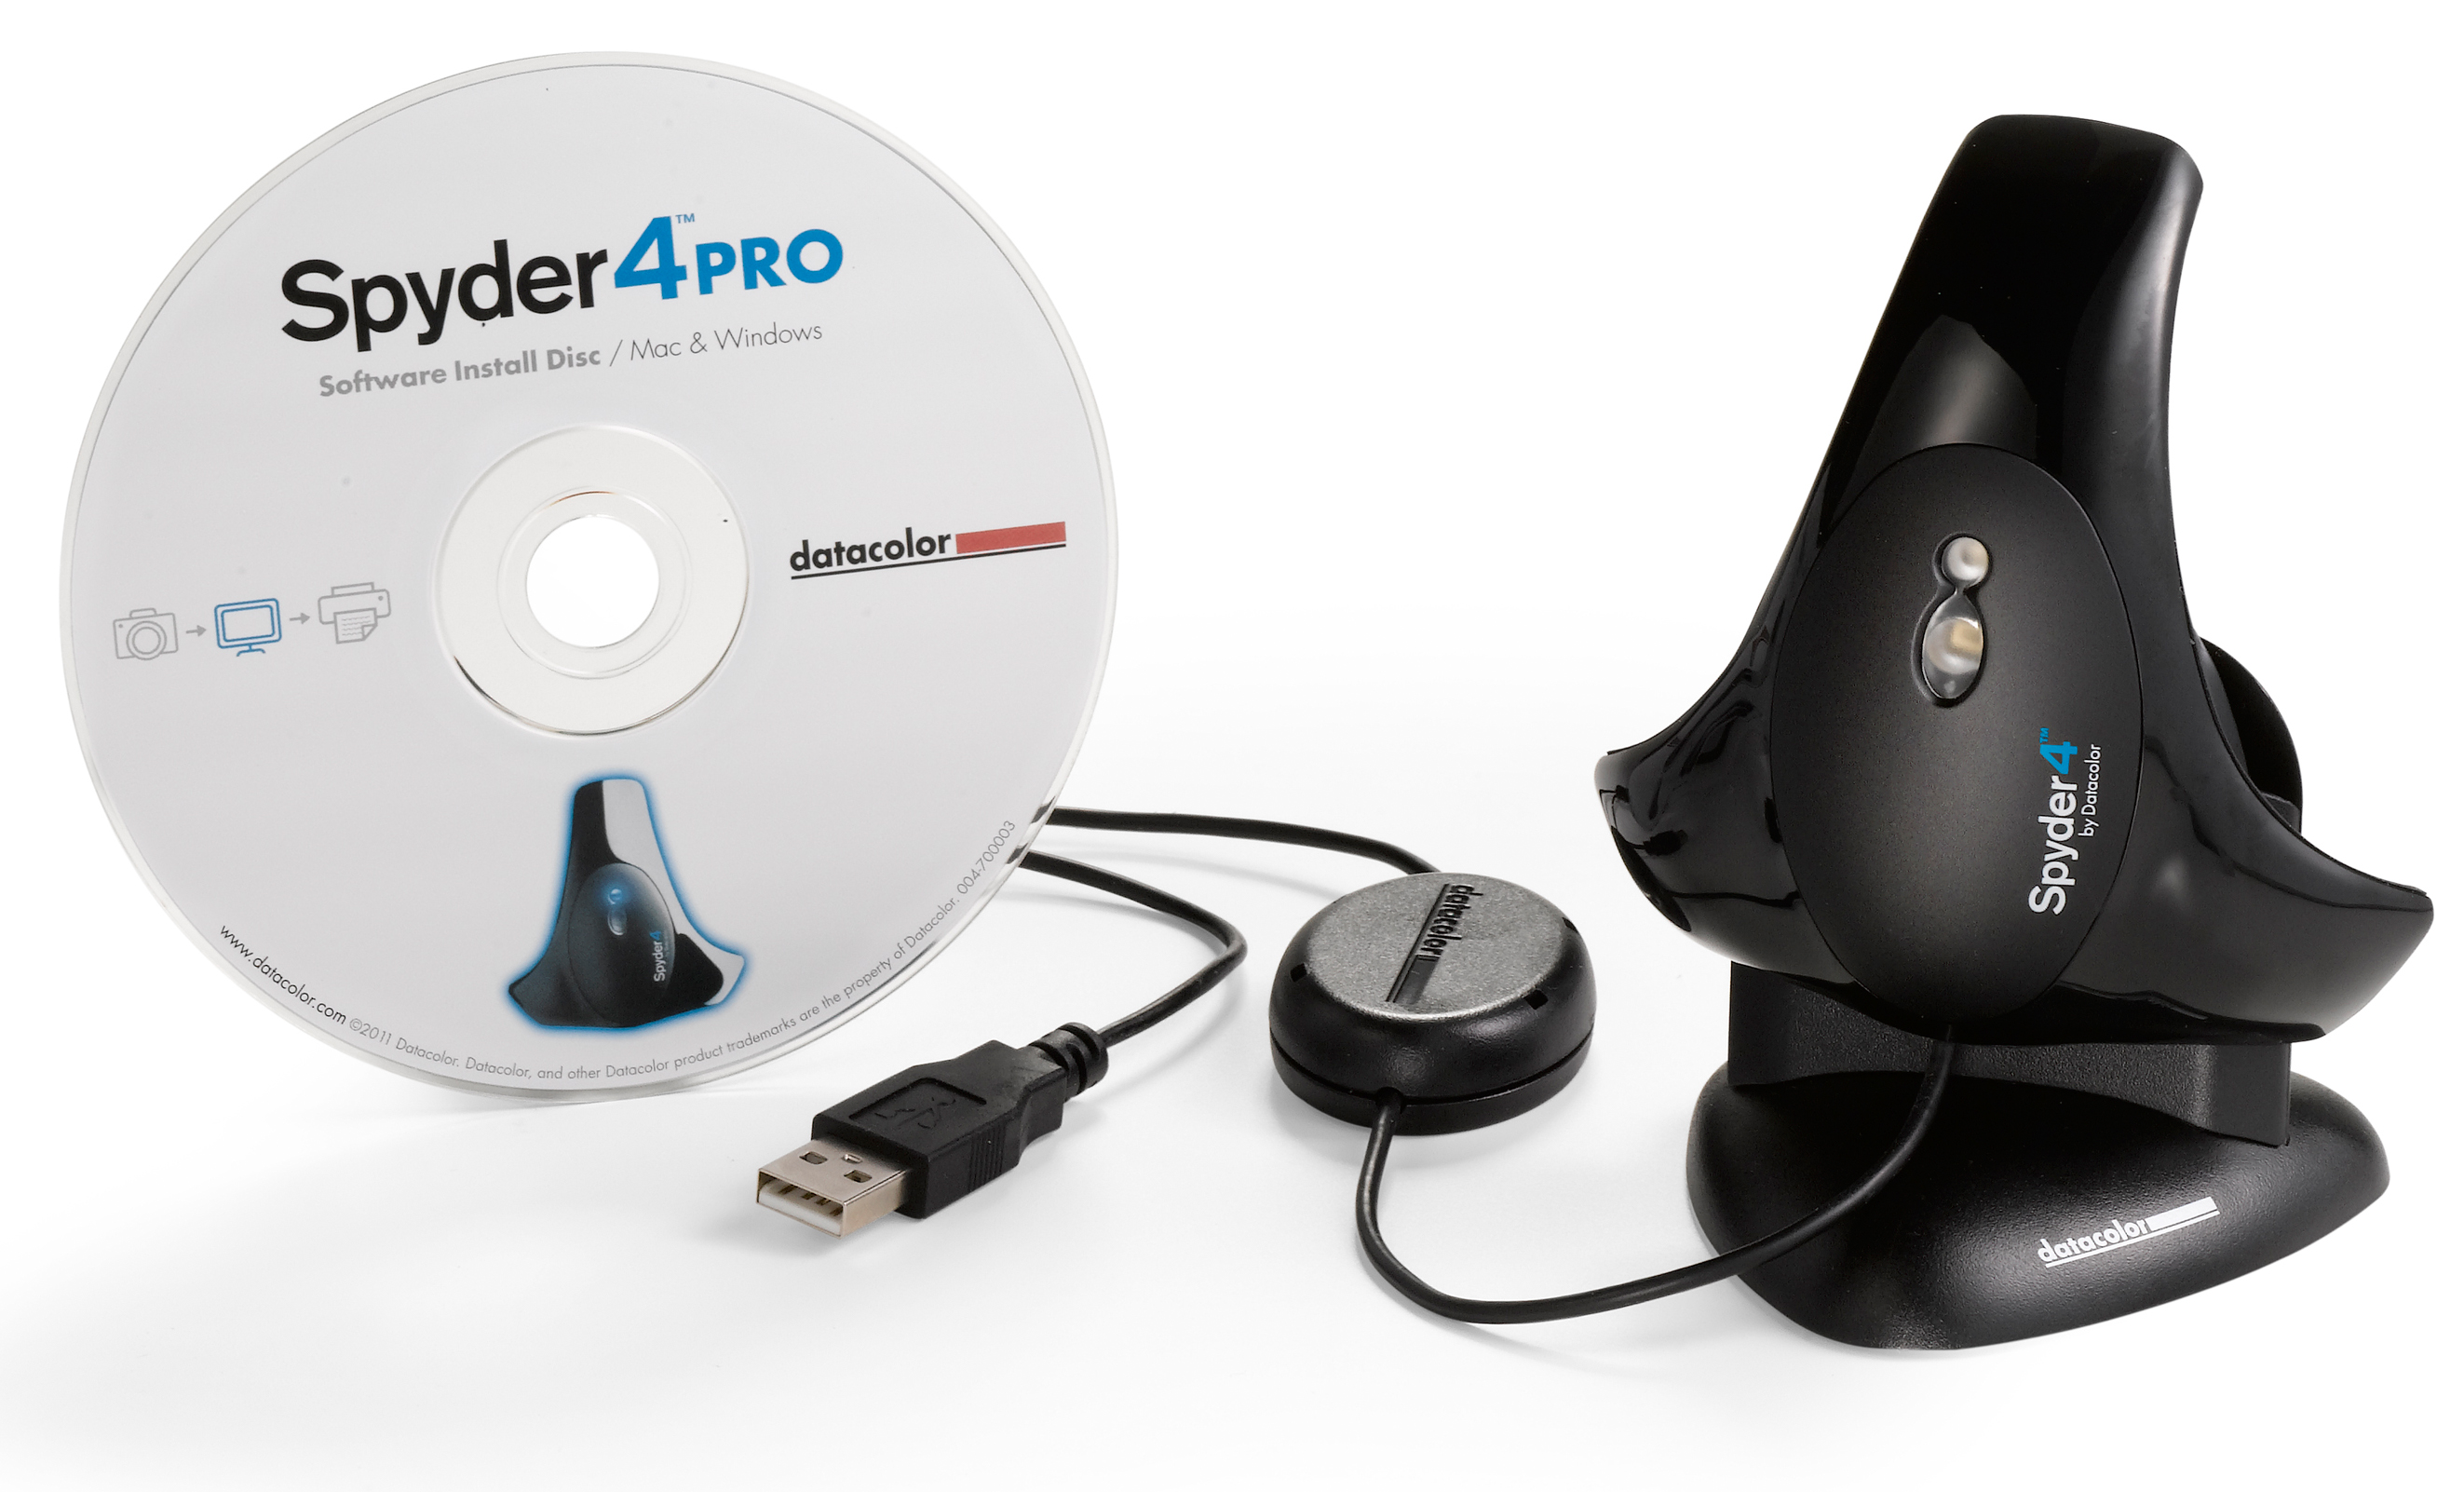 datacolor spyder 3 pro driver download